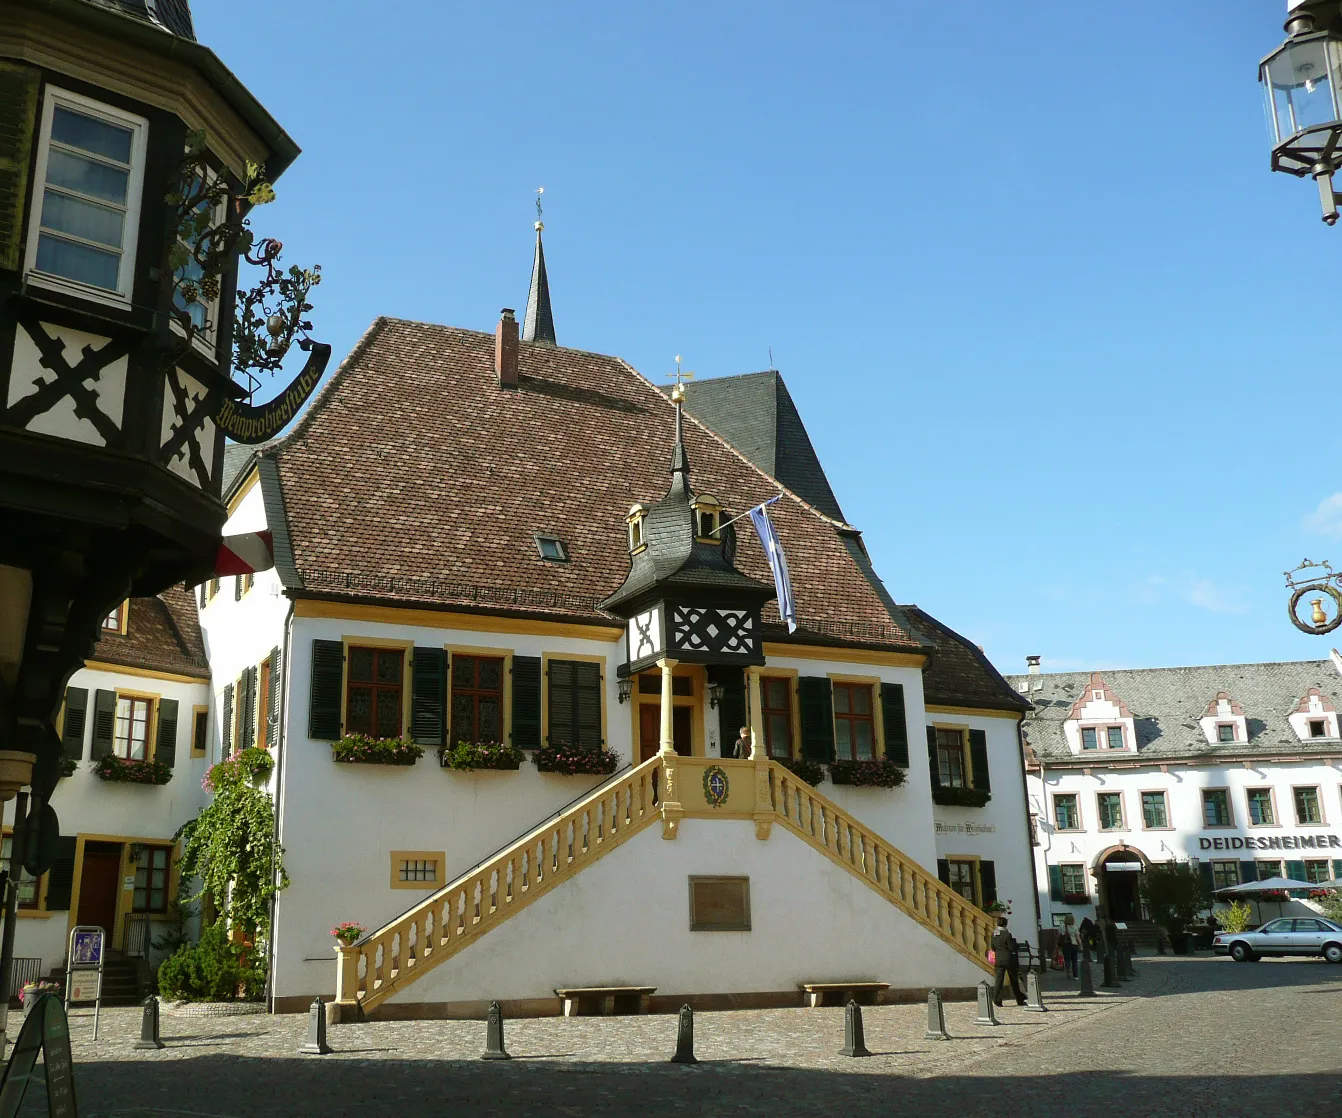 Photo showing: Townhall in Deisdesheim